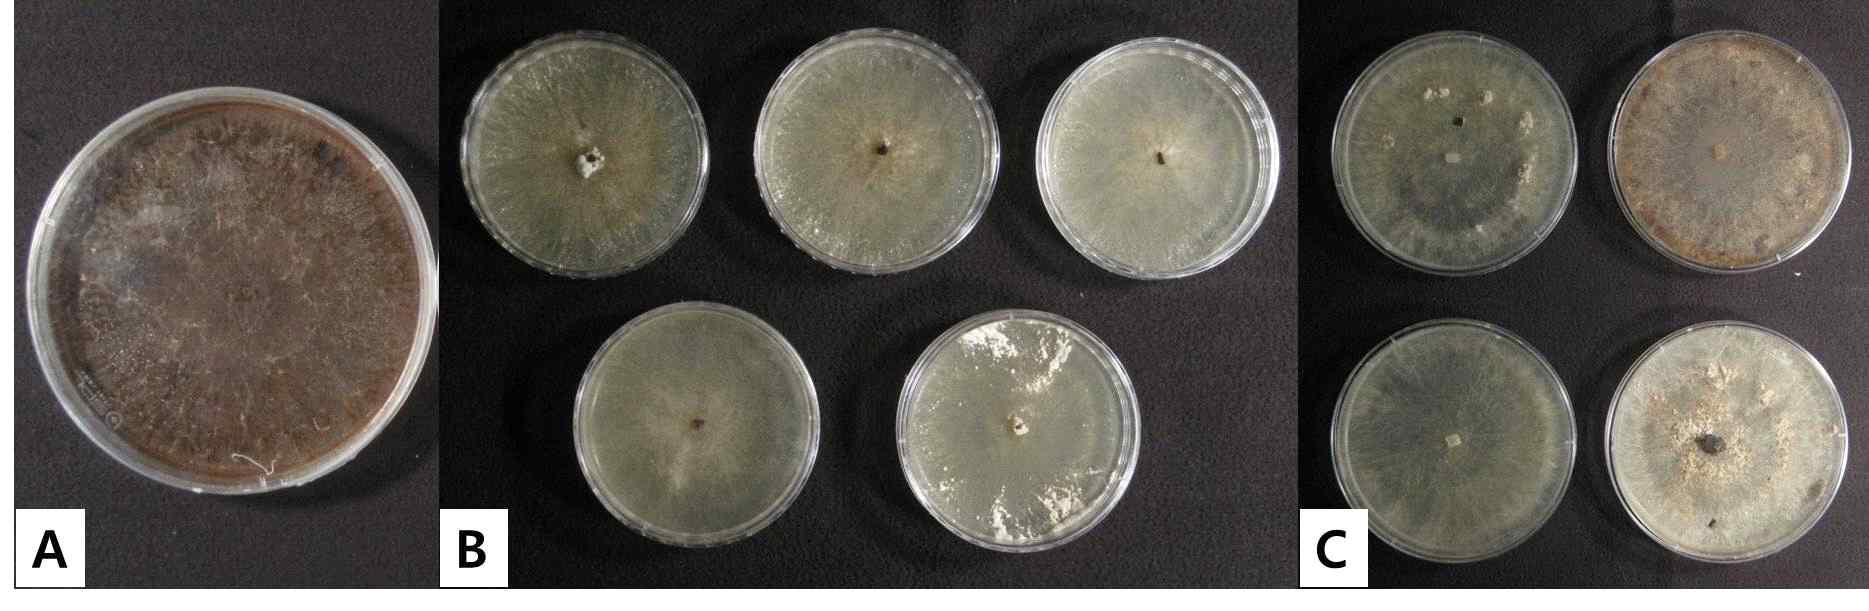 2013년 일미벼와 GM벼(Agb0103) 품종에서 분리된 잎집무늬마름병균 (A: 가뭄저항성벼 분리균주, B: 일미벼 분리균주, C: 일품벼 분리균주)